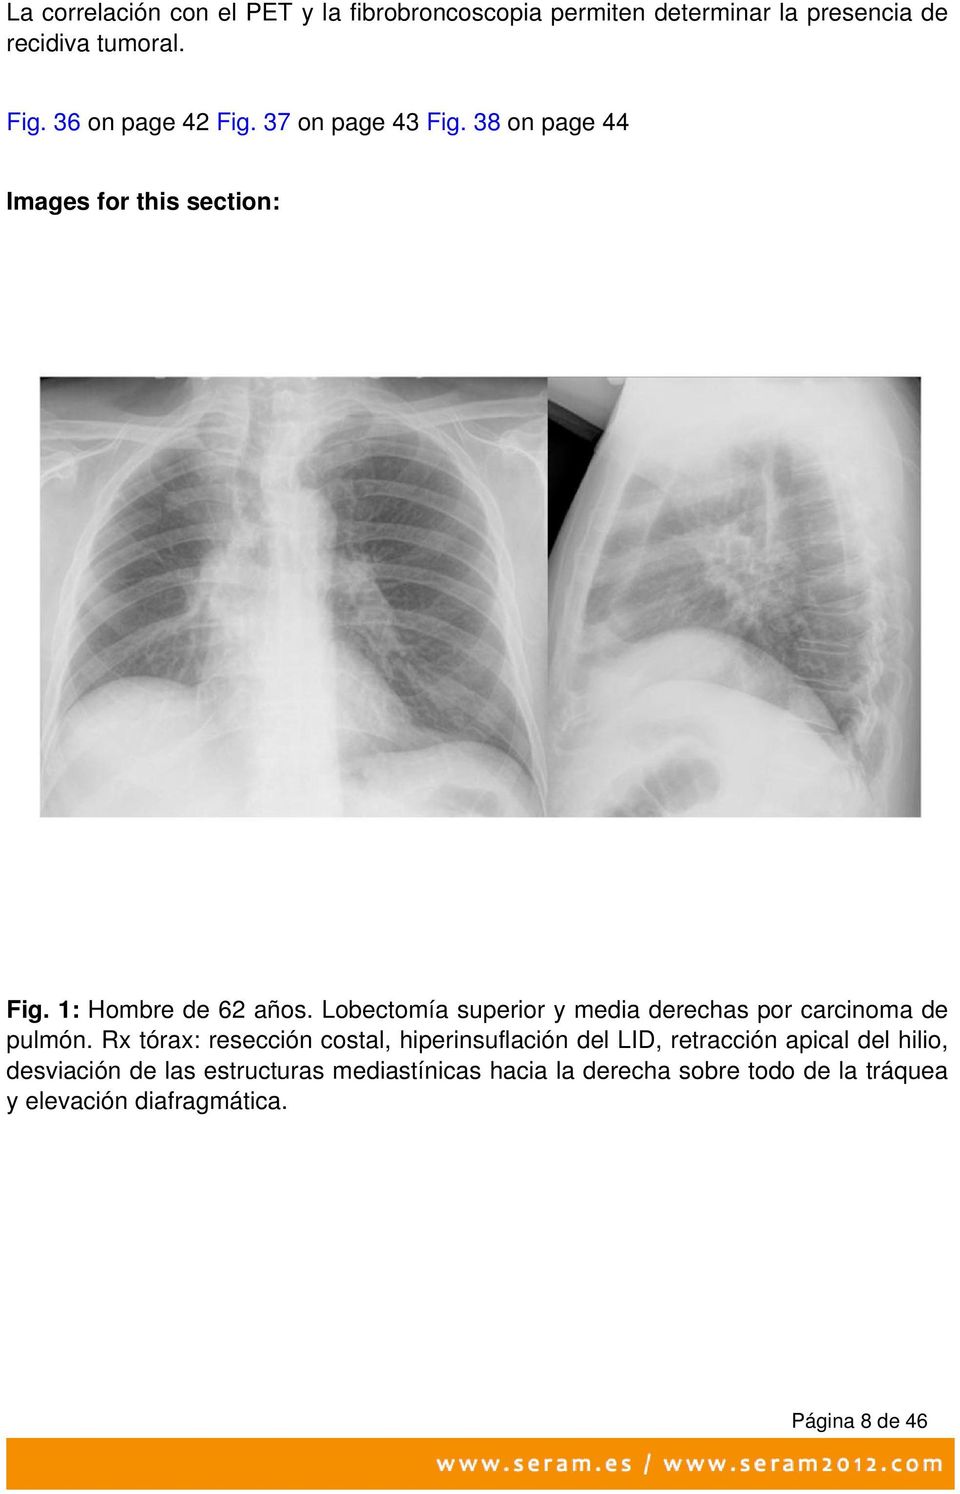 Lobectomía superior y media derechas por carcinoma de pulmón.